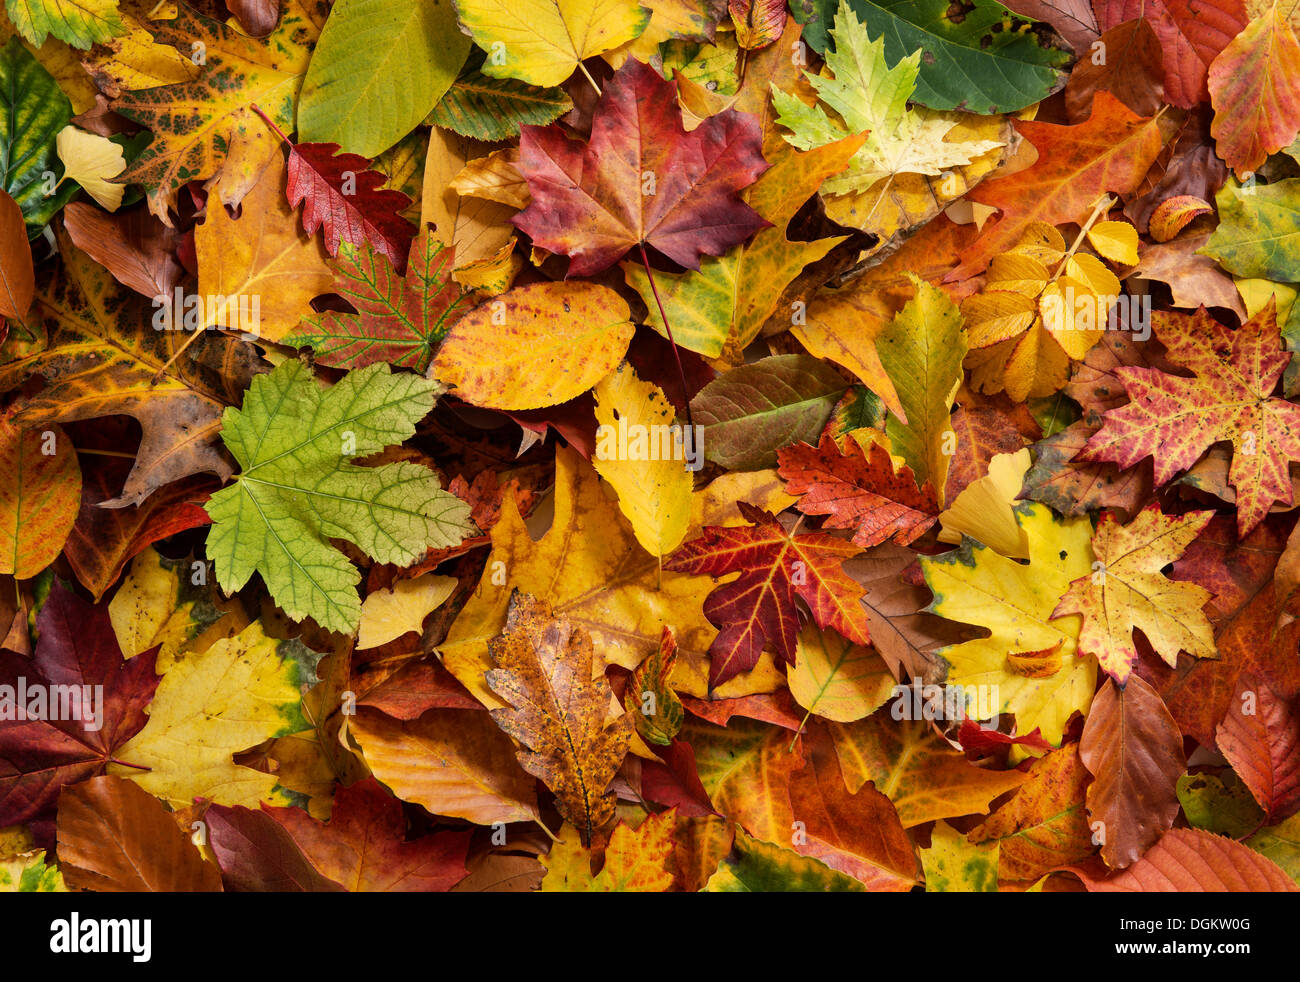 Colorful autumn foliage Stock Photo